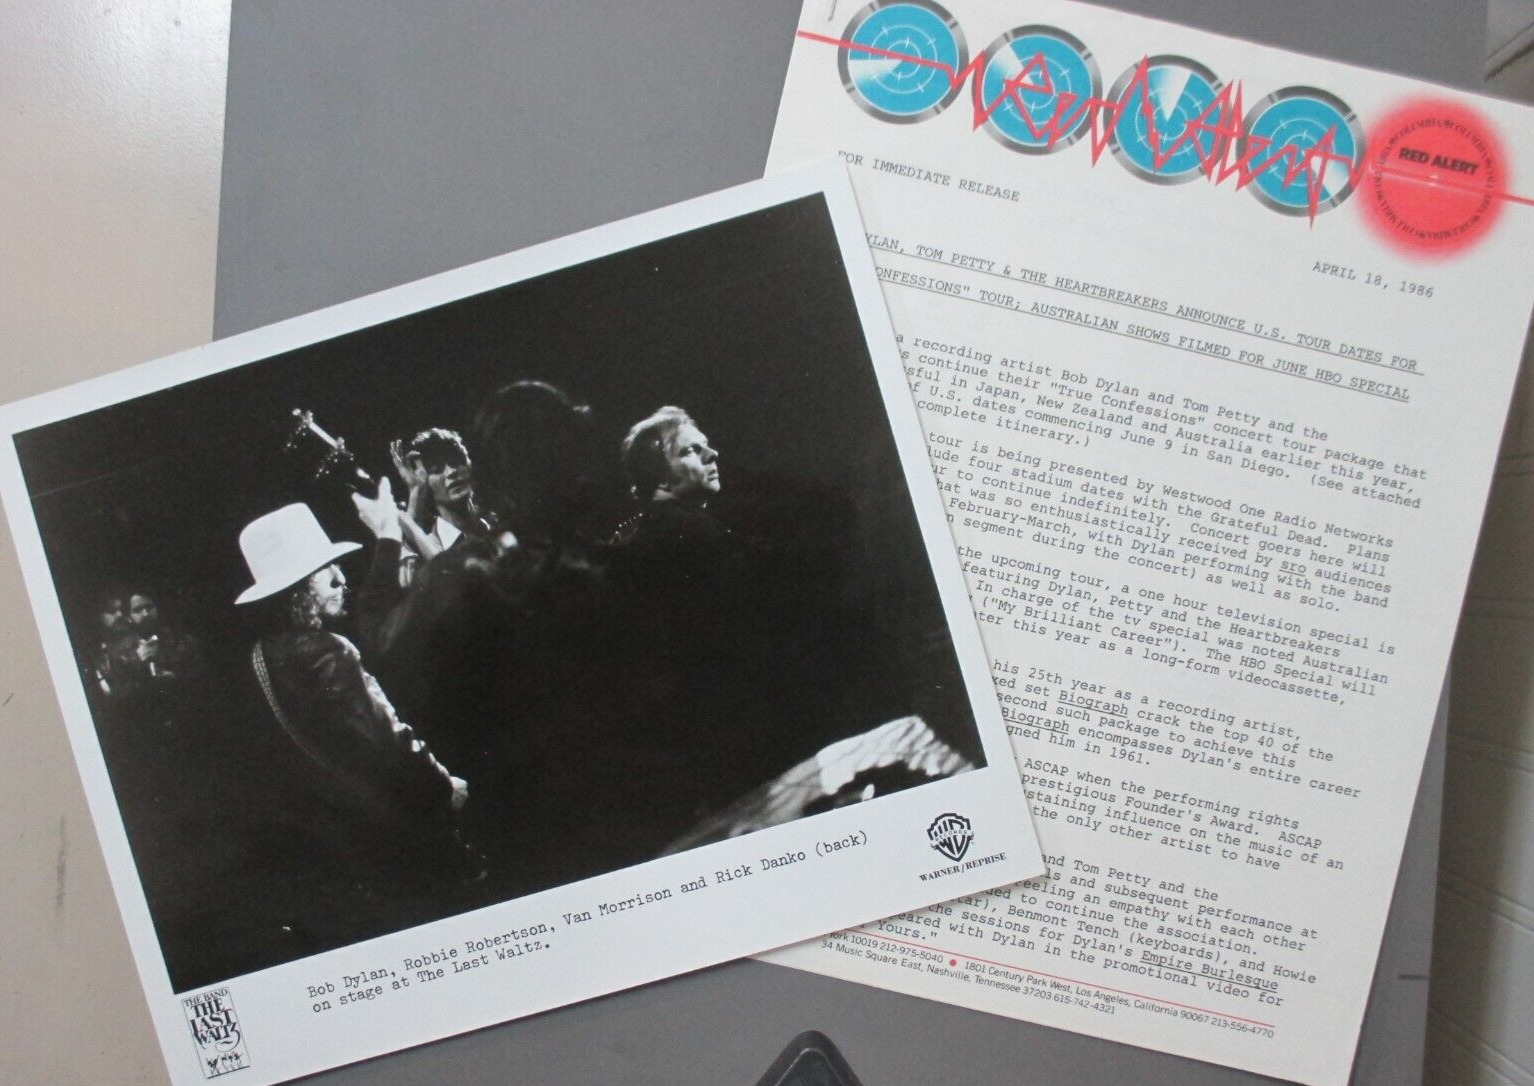 Bob Dylan photo ORIGINAL 8X10 + press kit - 2 pages for Dylan/Petty Tour  !